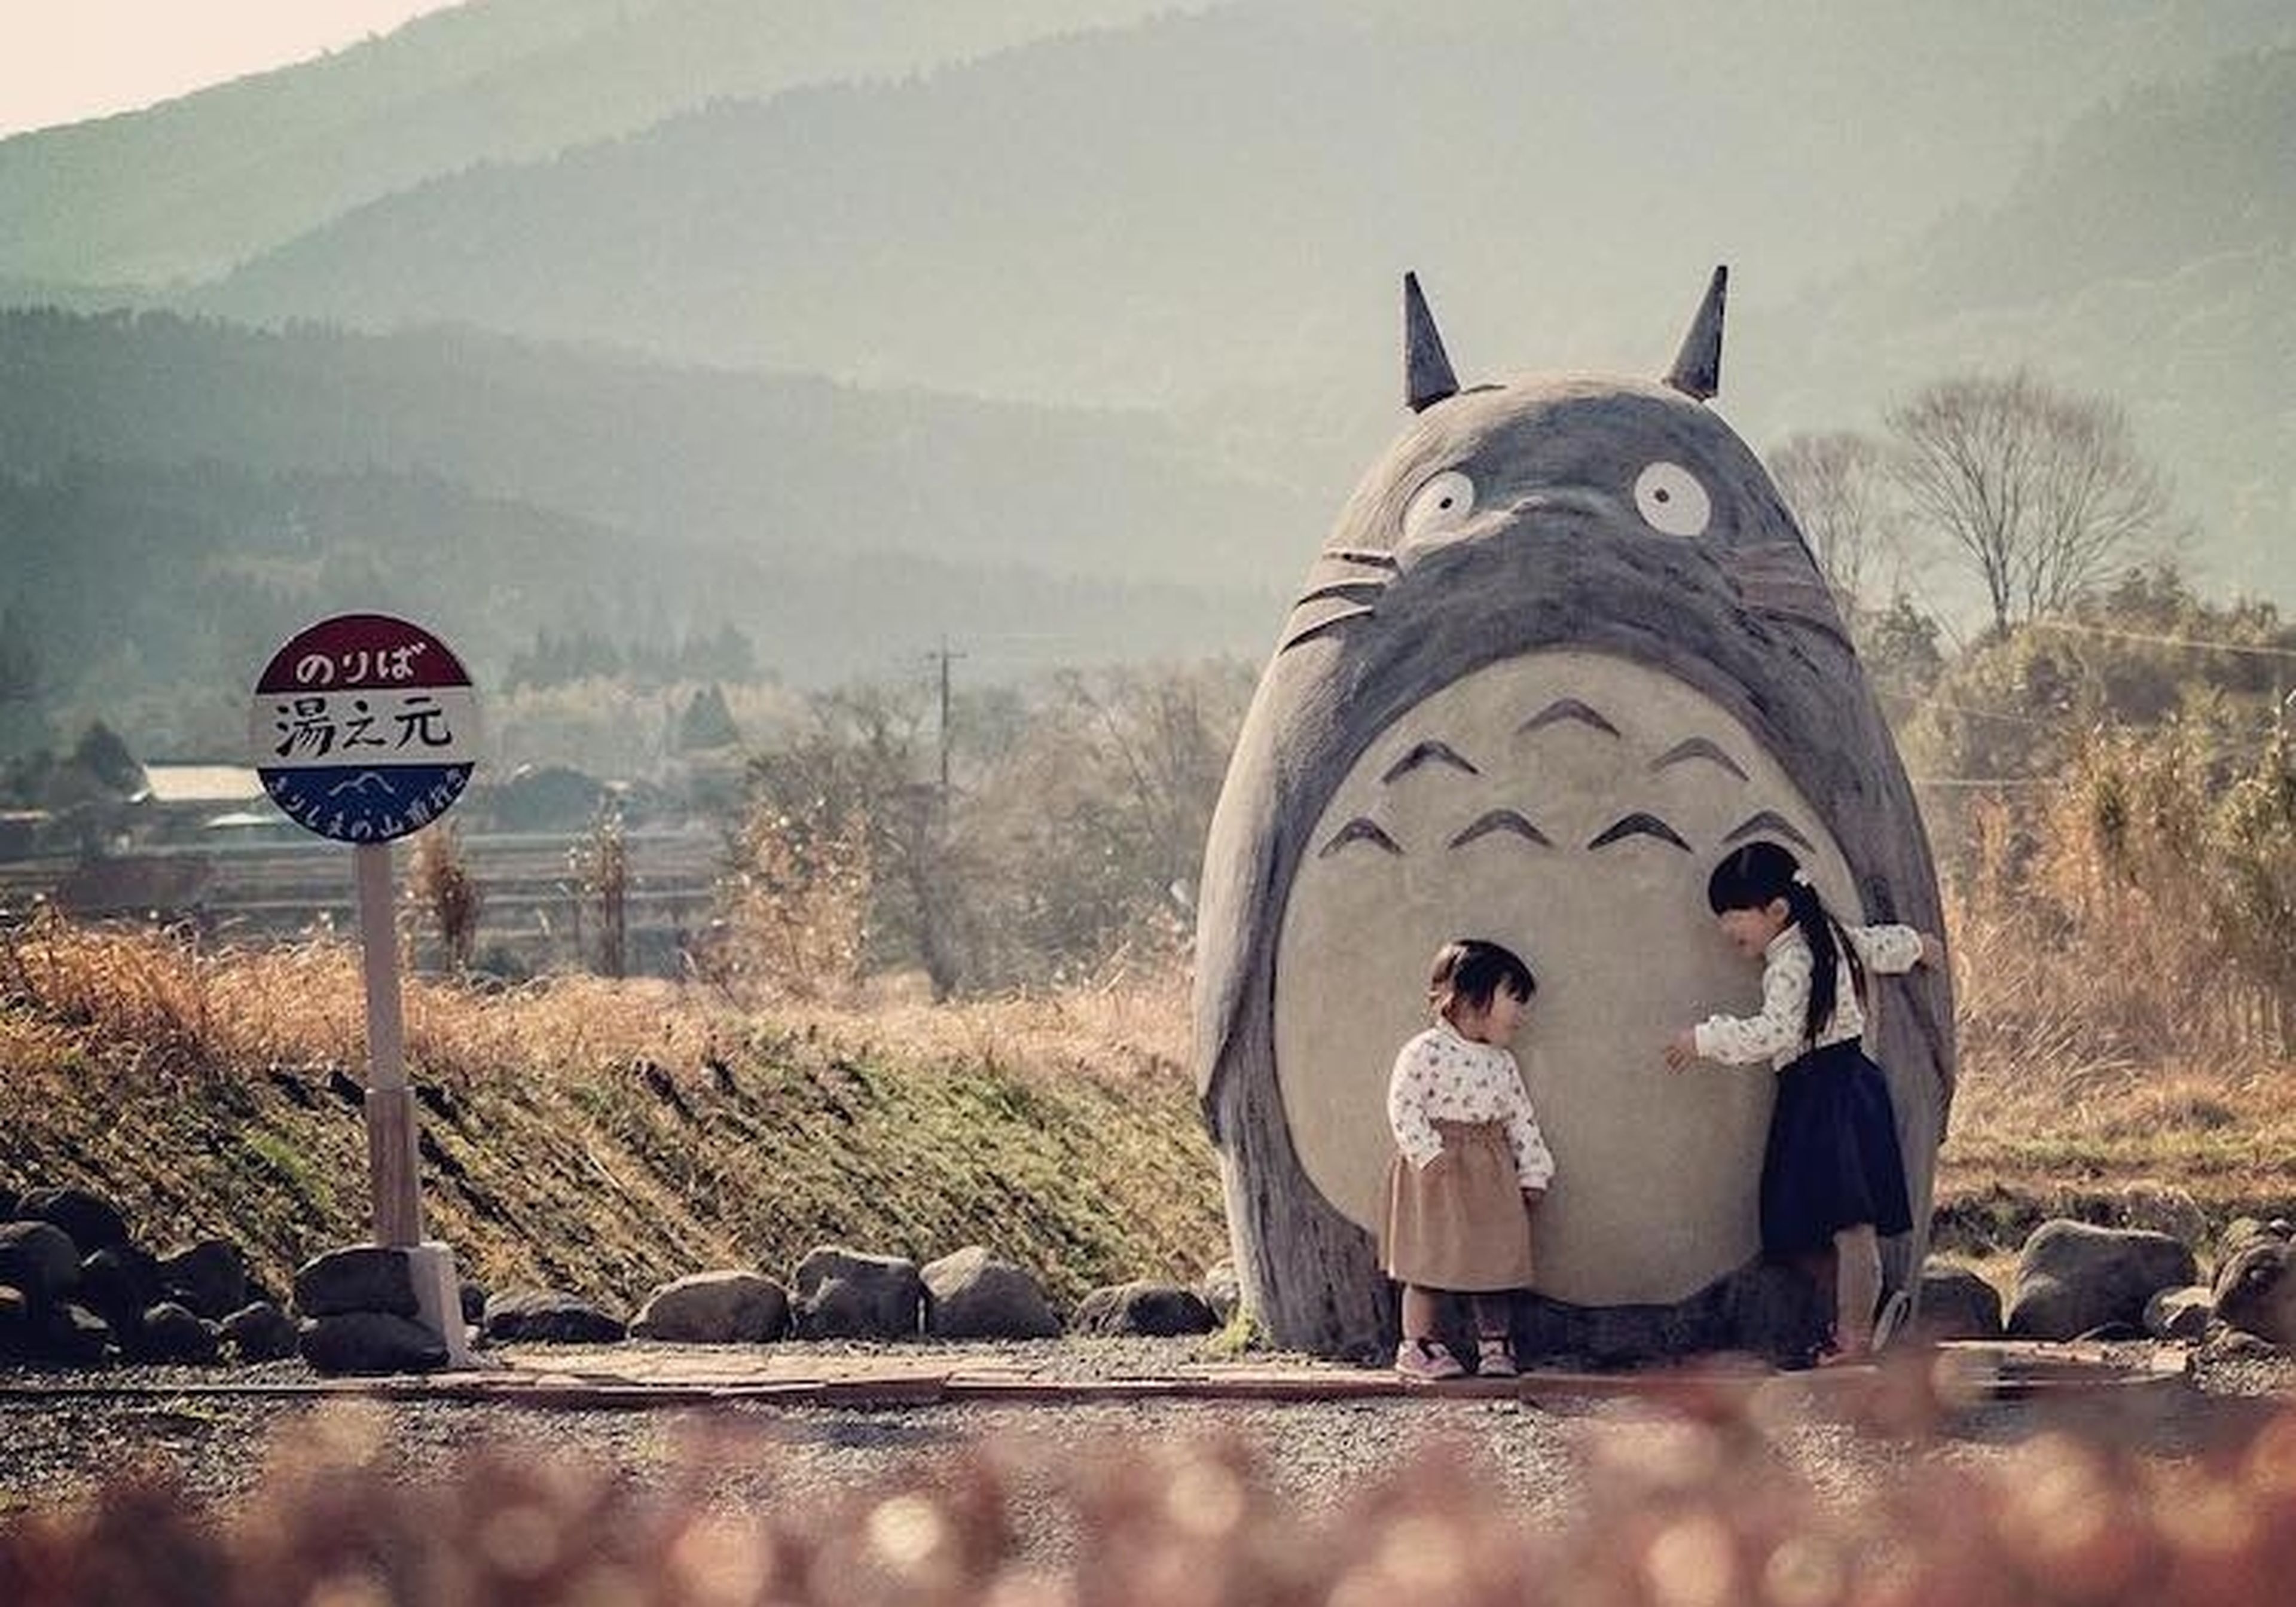 Dos abuelos japoneses crean un Totoro gigante para sus nietos, y se convierte en parada oficial del autobús